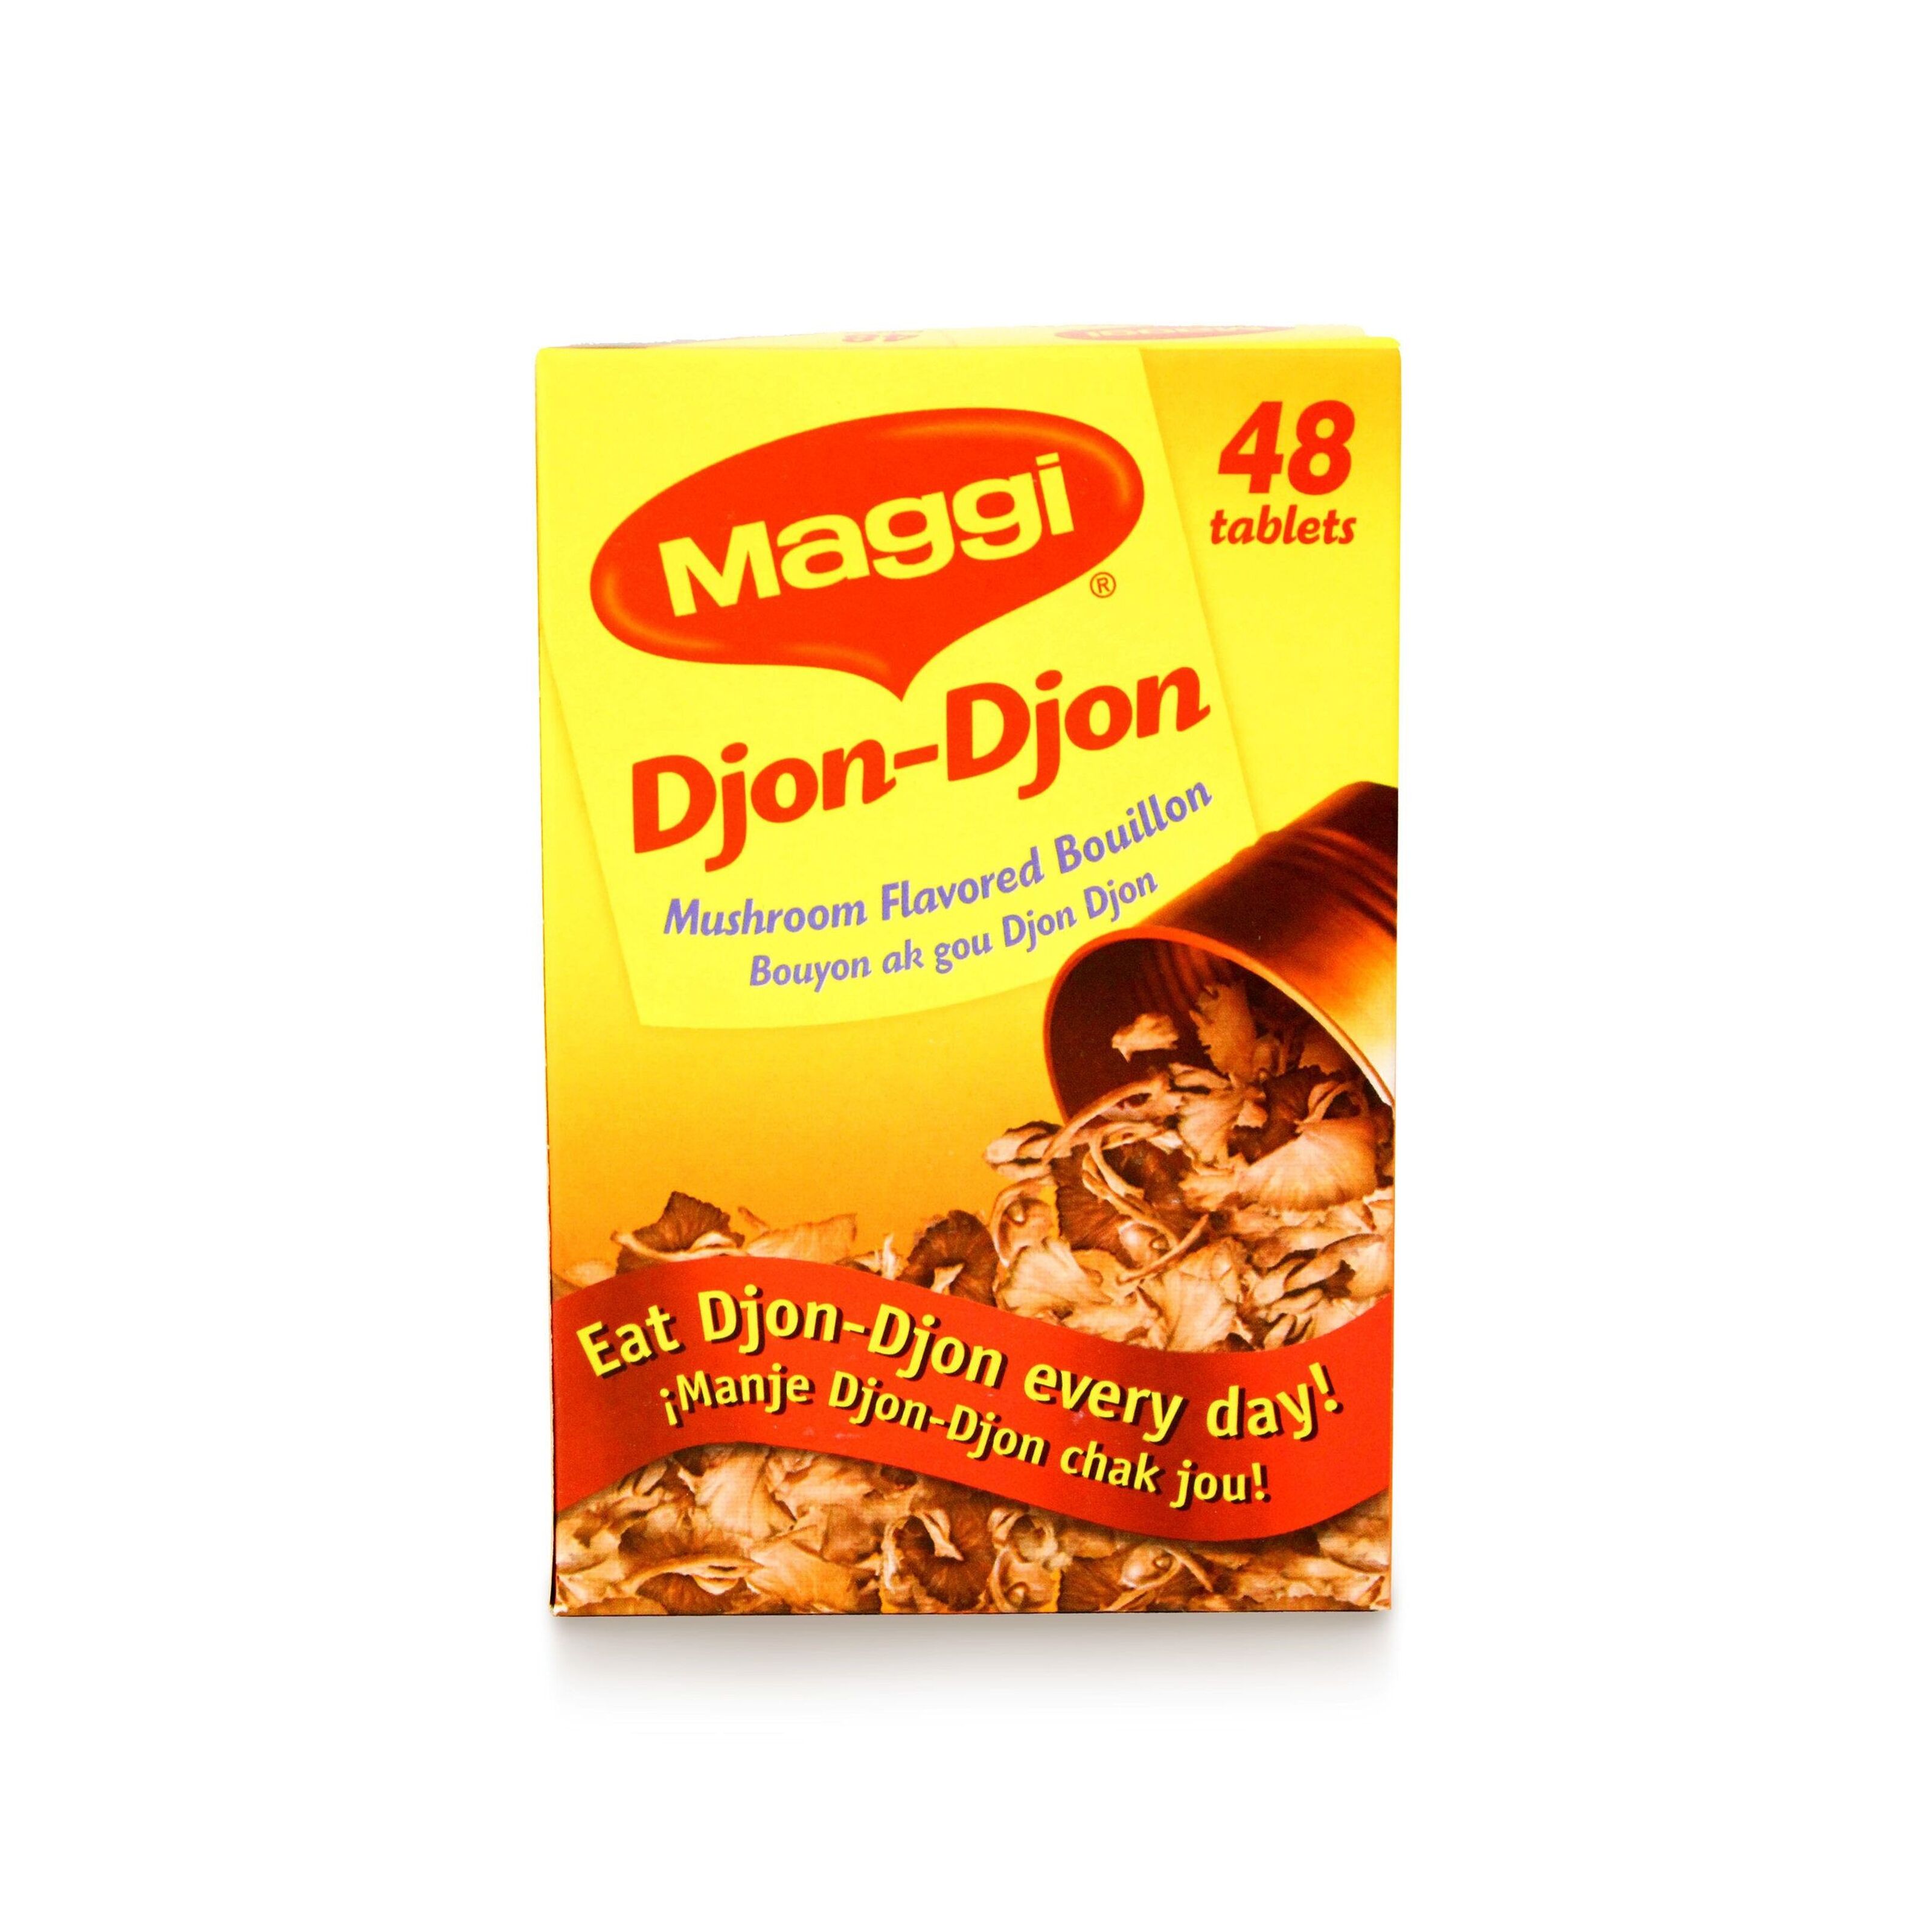 MAGGI Djon-djon (1dozen cubes) – JNJ CARIBBEAN FOODS